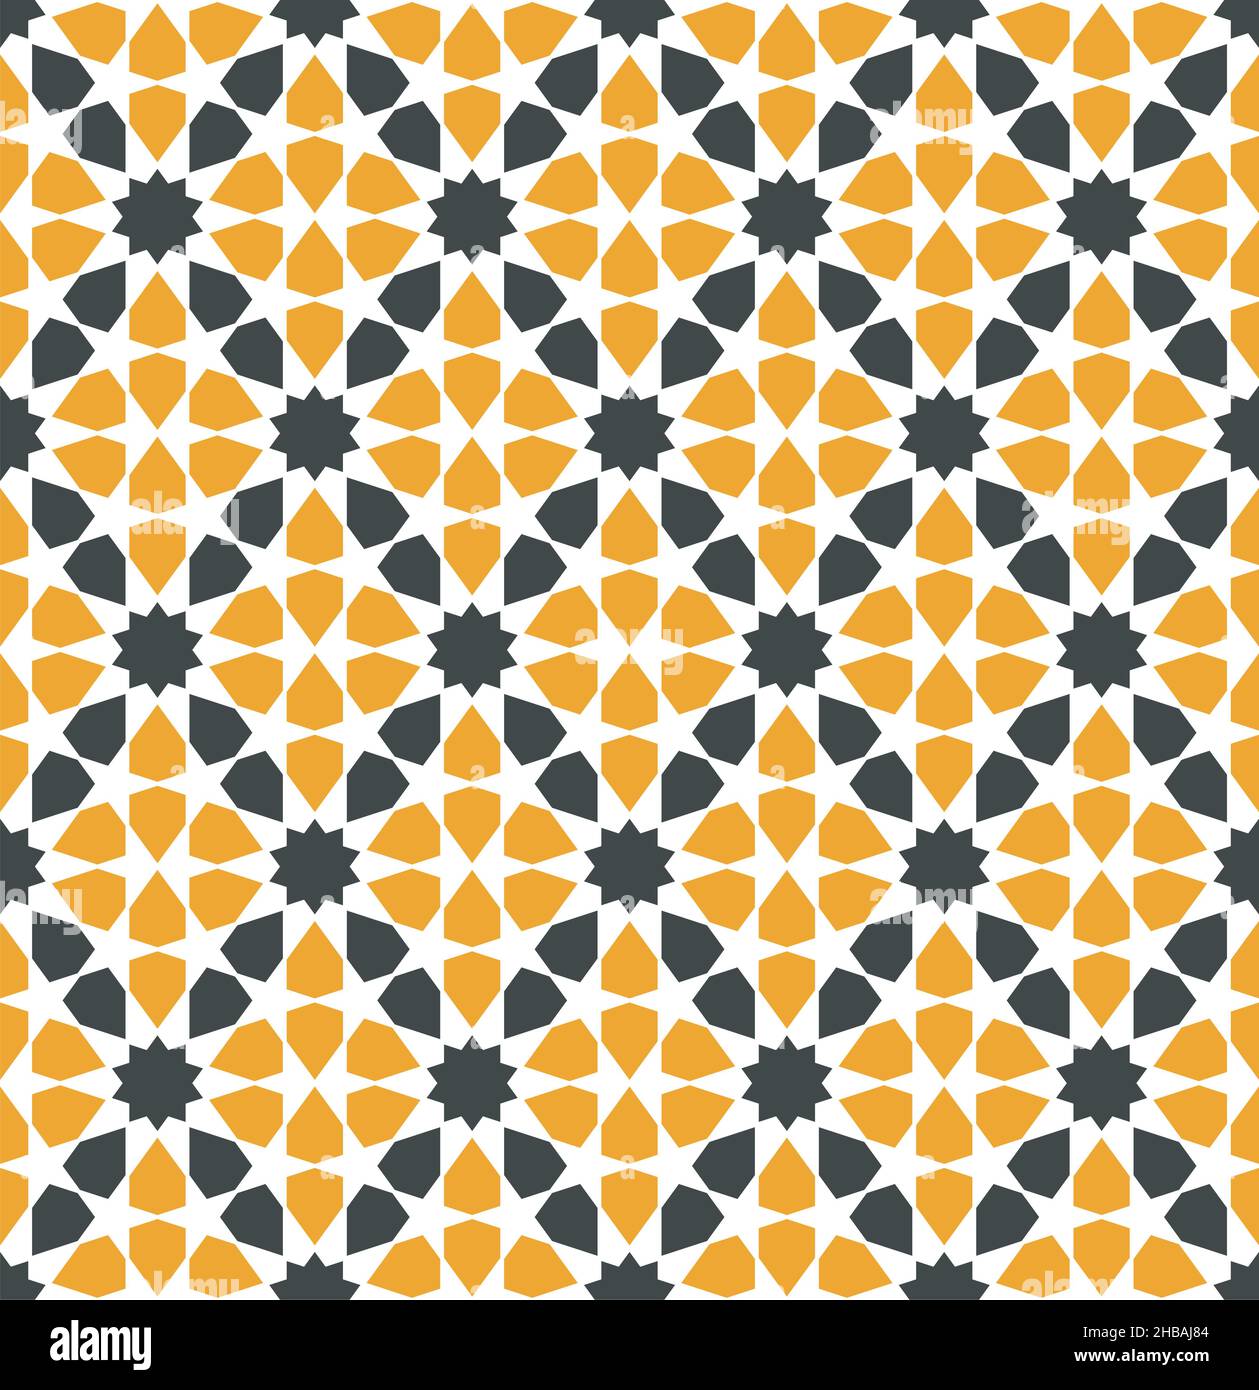 Répétition géométrique sans couture.Basé sur l'ornement islamique.Noir et orange Illustration de Vecteur